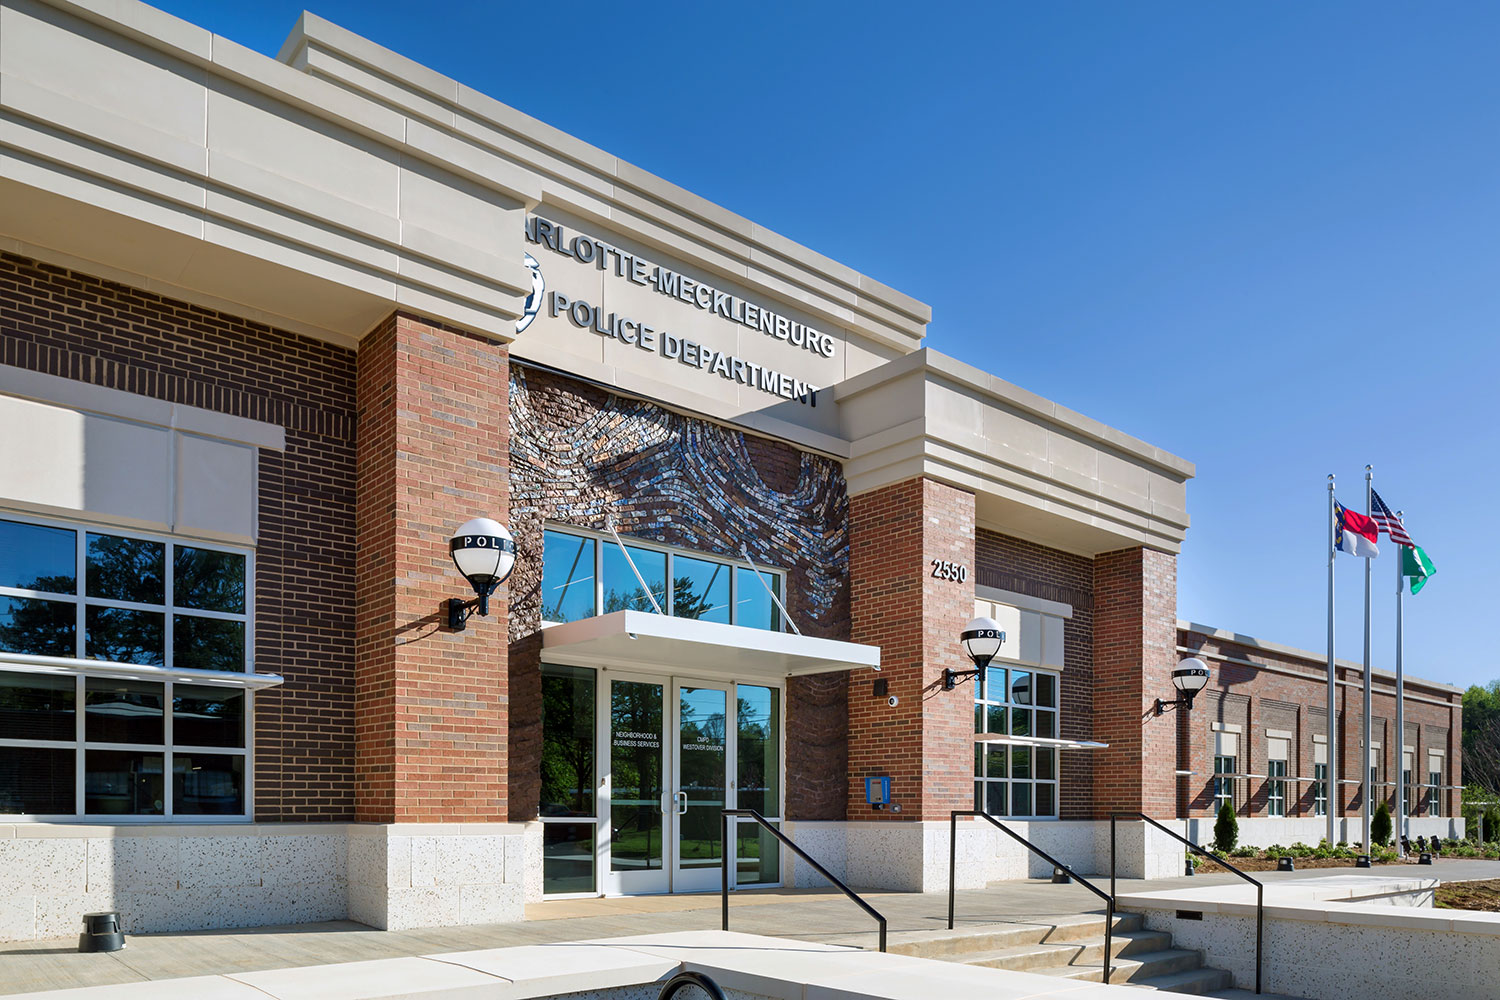 Charlotte Mecklenburg Police Department Westover Division Station